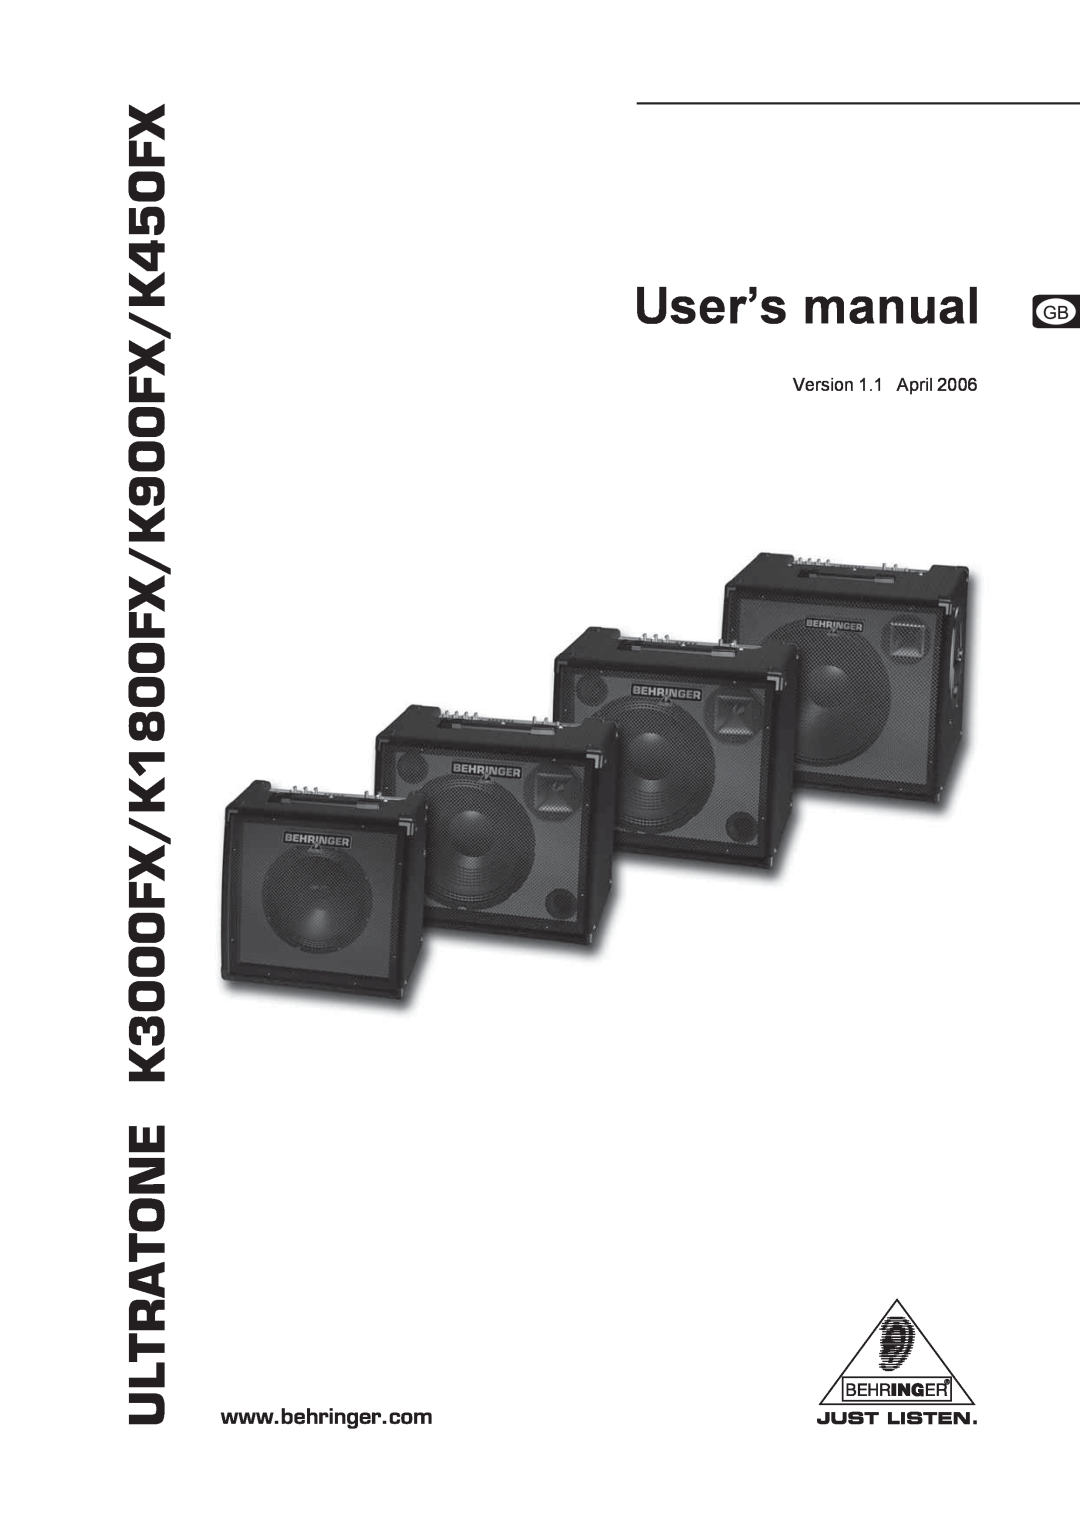 Behringer user manual Version 1.1 April, ULTRATONE K3000FX/K1800FX/K900FX/K450FX 